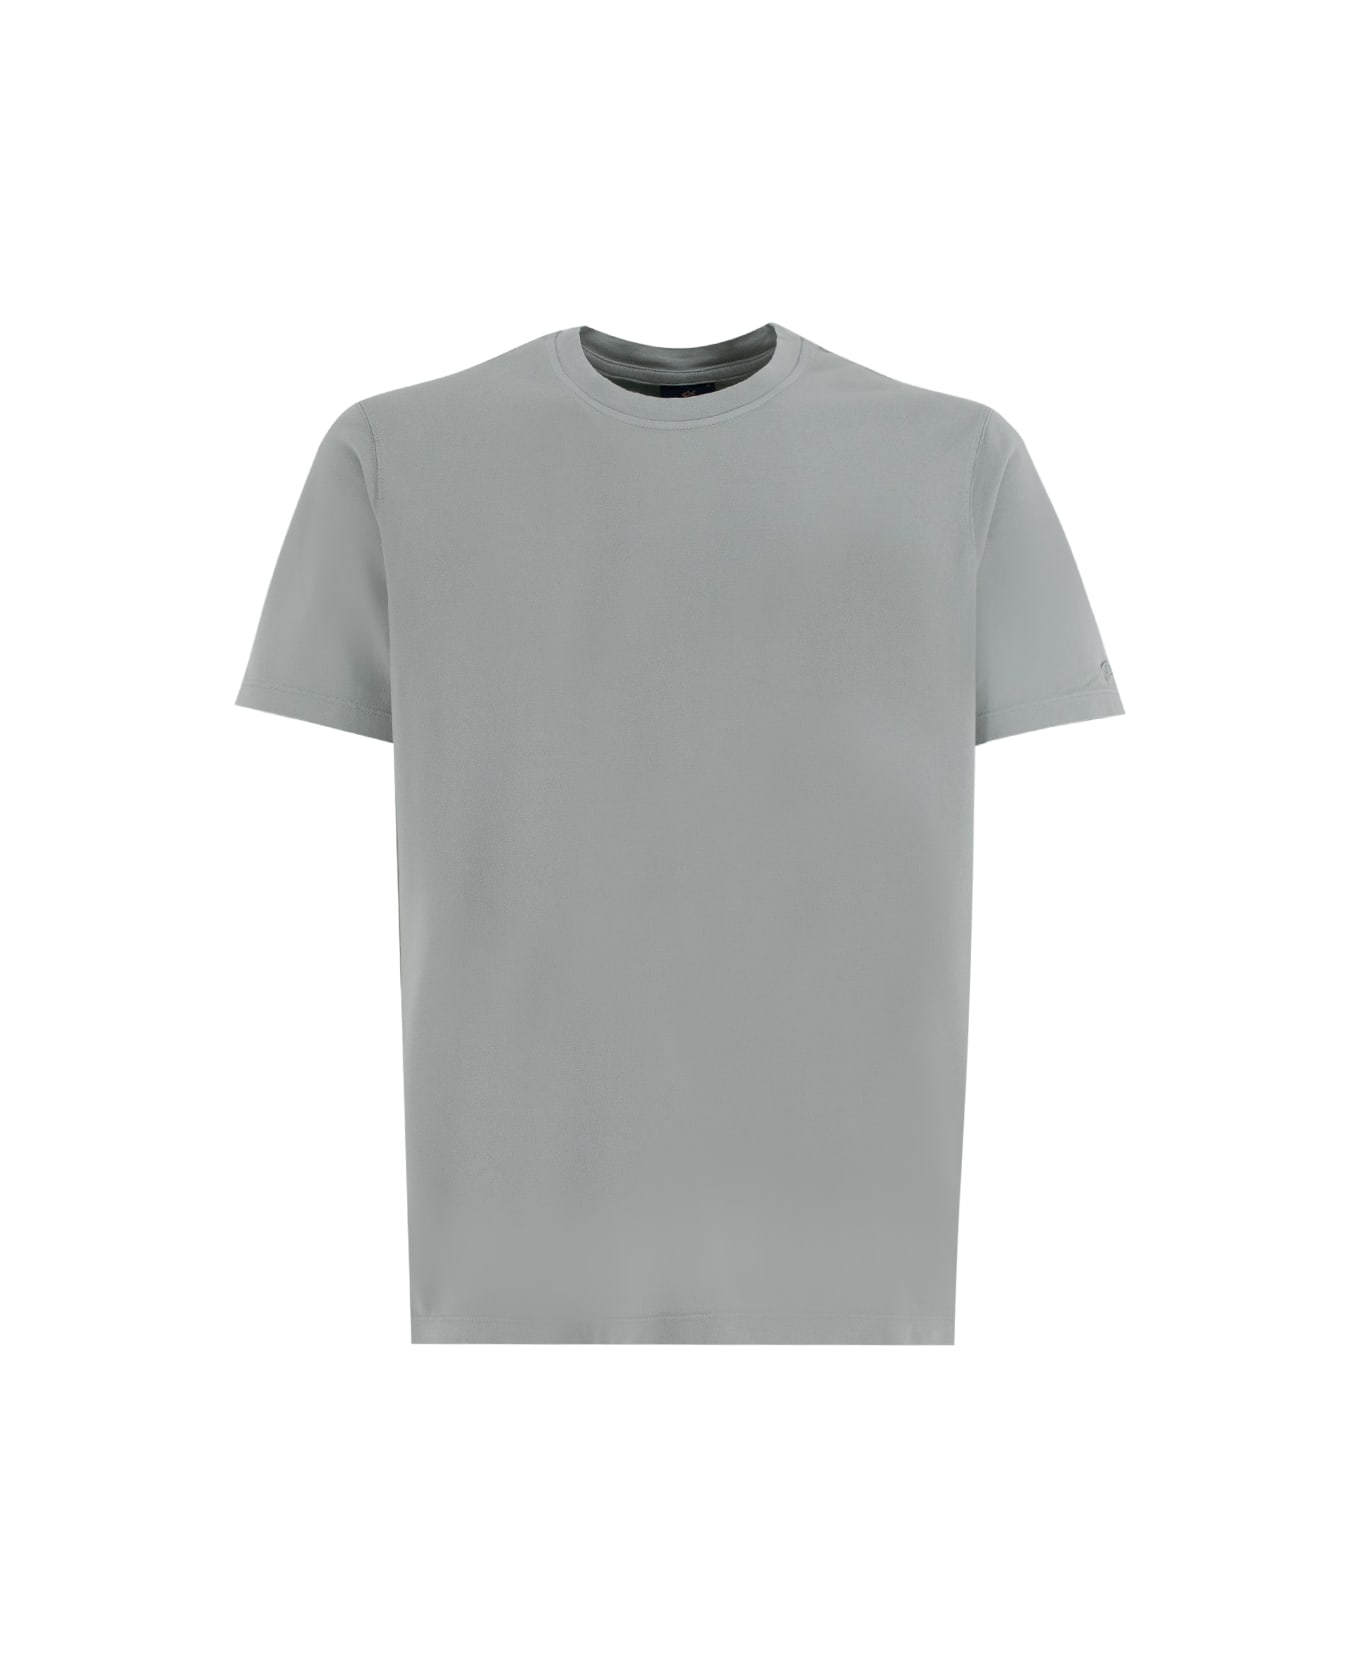 Paul&Shark T-shirt - CARTA DA ZUCCHERO シャツ